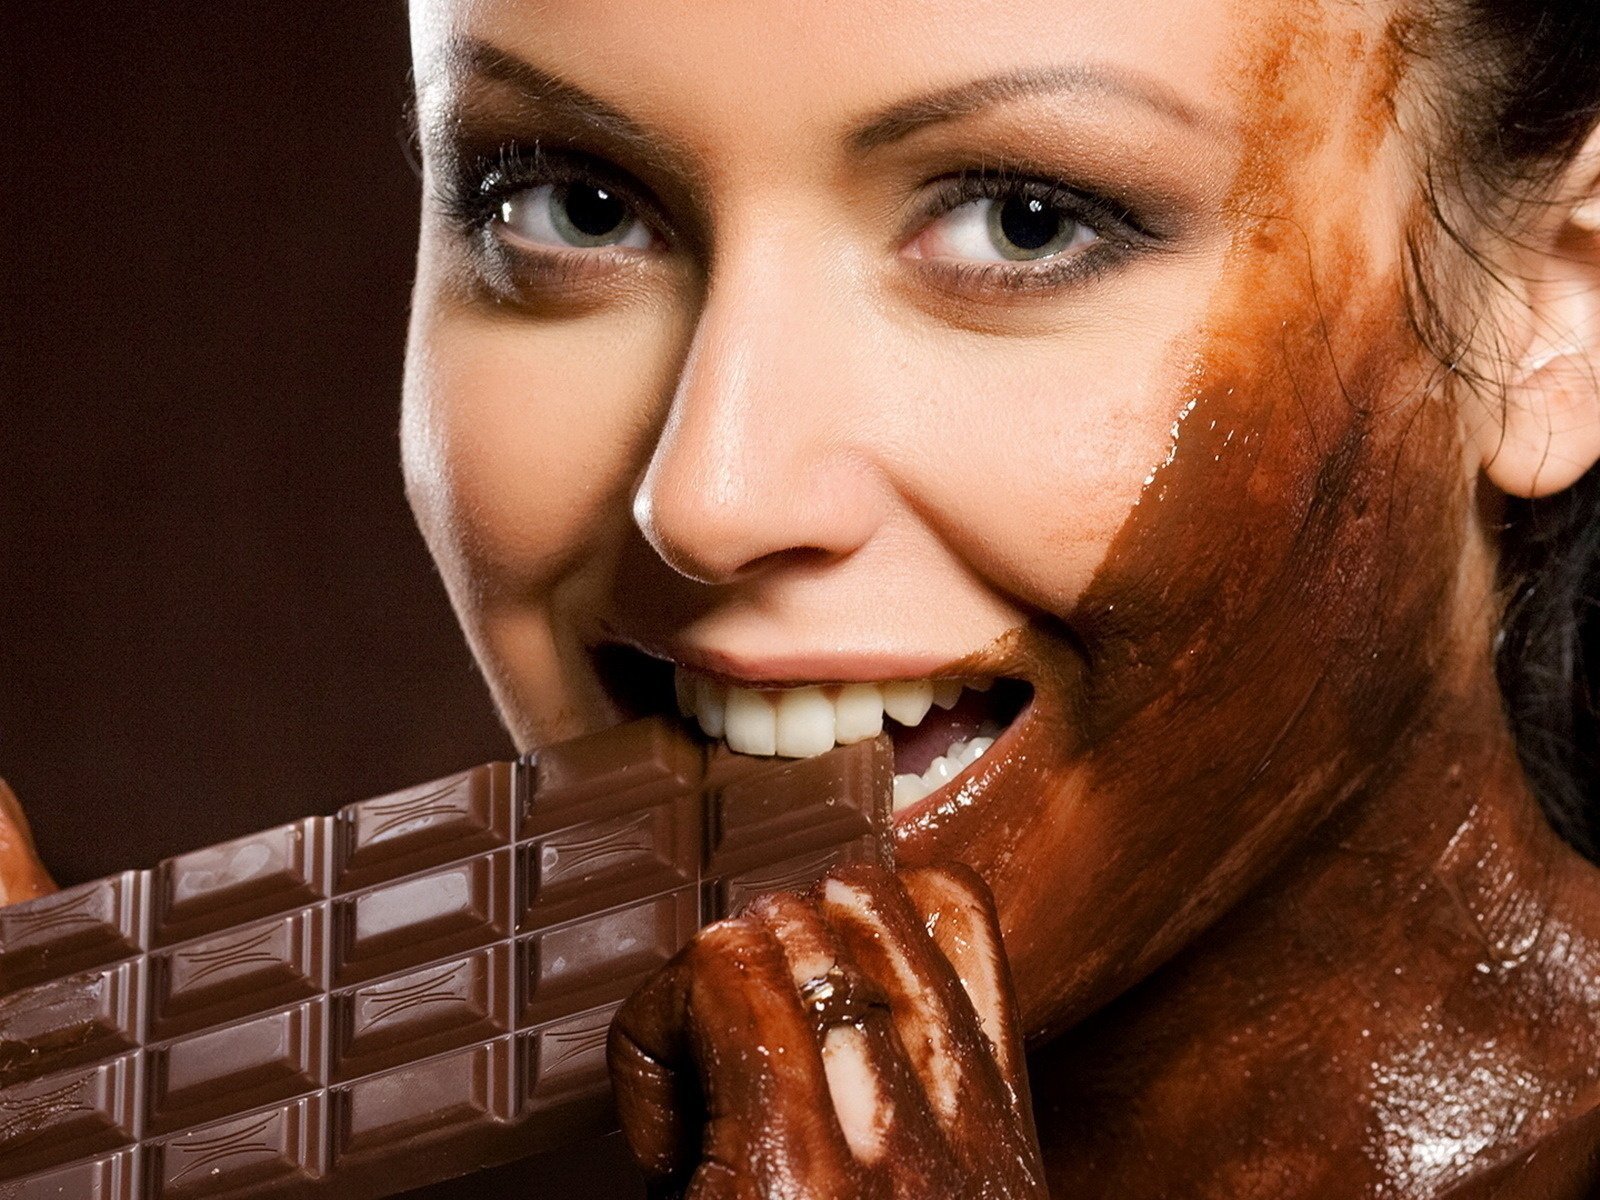 Шоколадная девушка принимает белый член